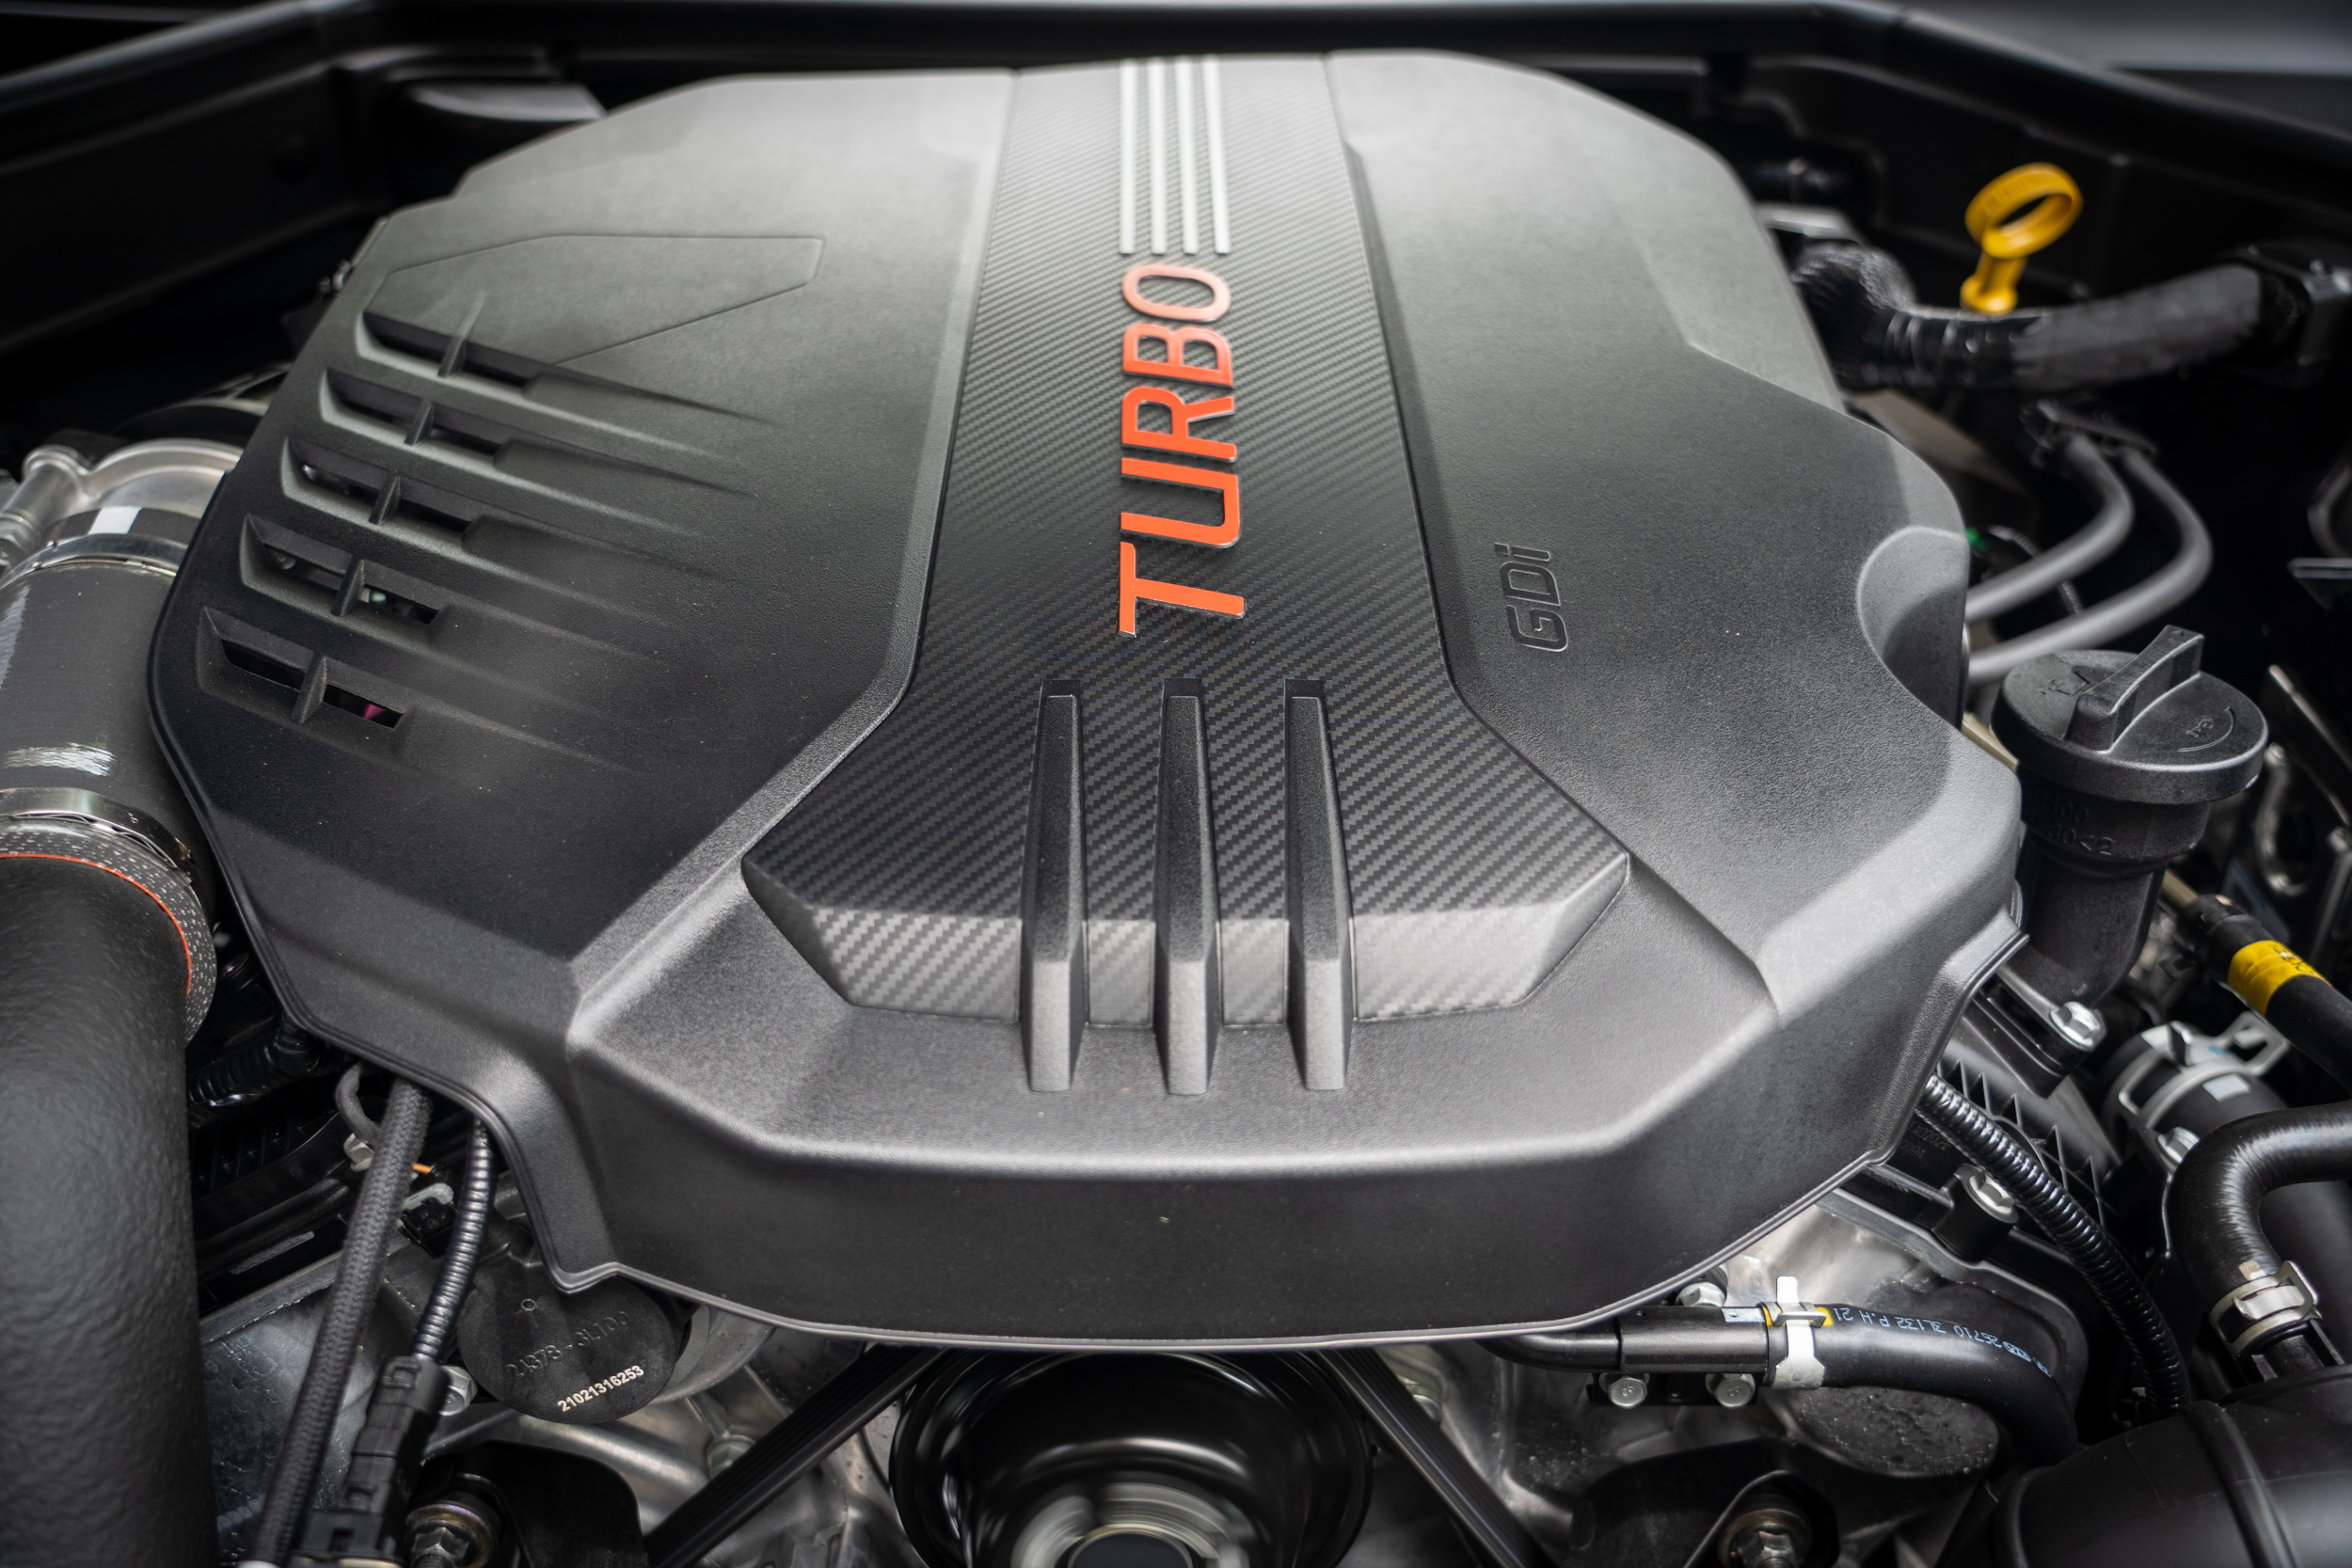 搭載缸內直噴雙渦輪增壓 V6 汽油引擎，具備 366ps / 6000rpm 最大馬力與 52kgm / 1300~4500rpm 最大扭力輸出。